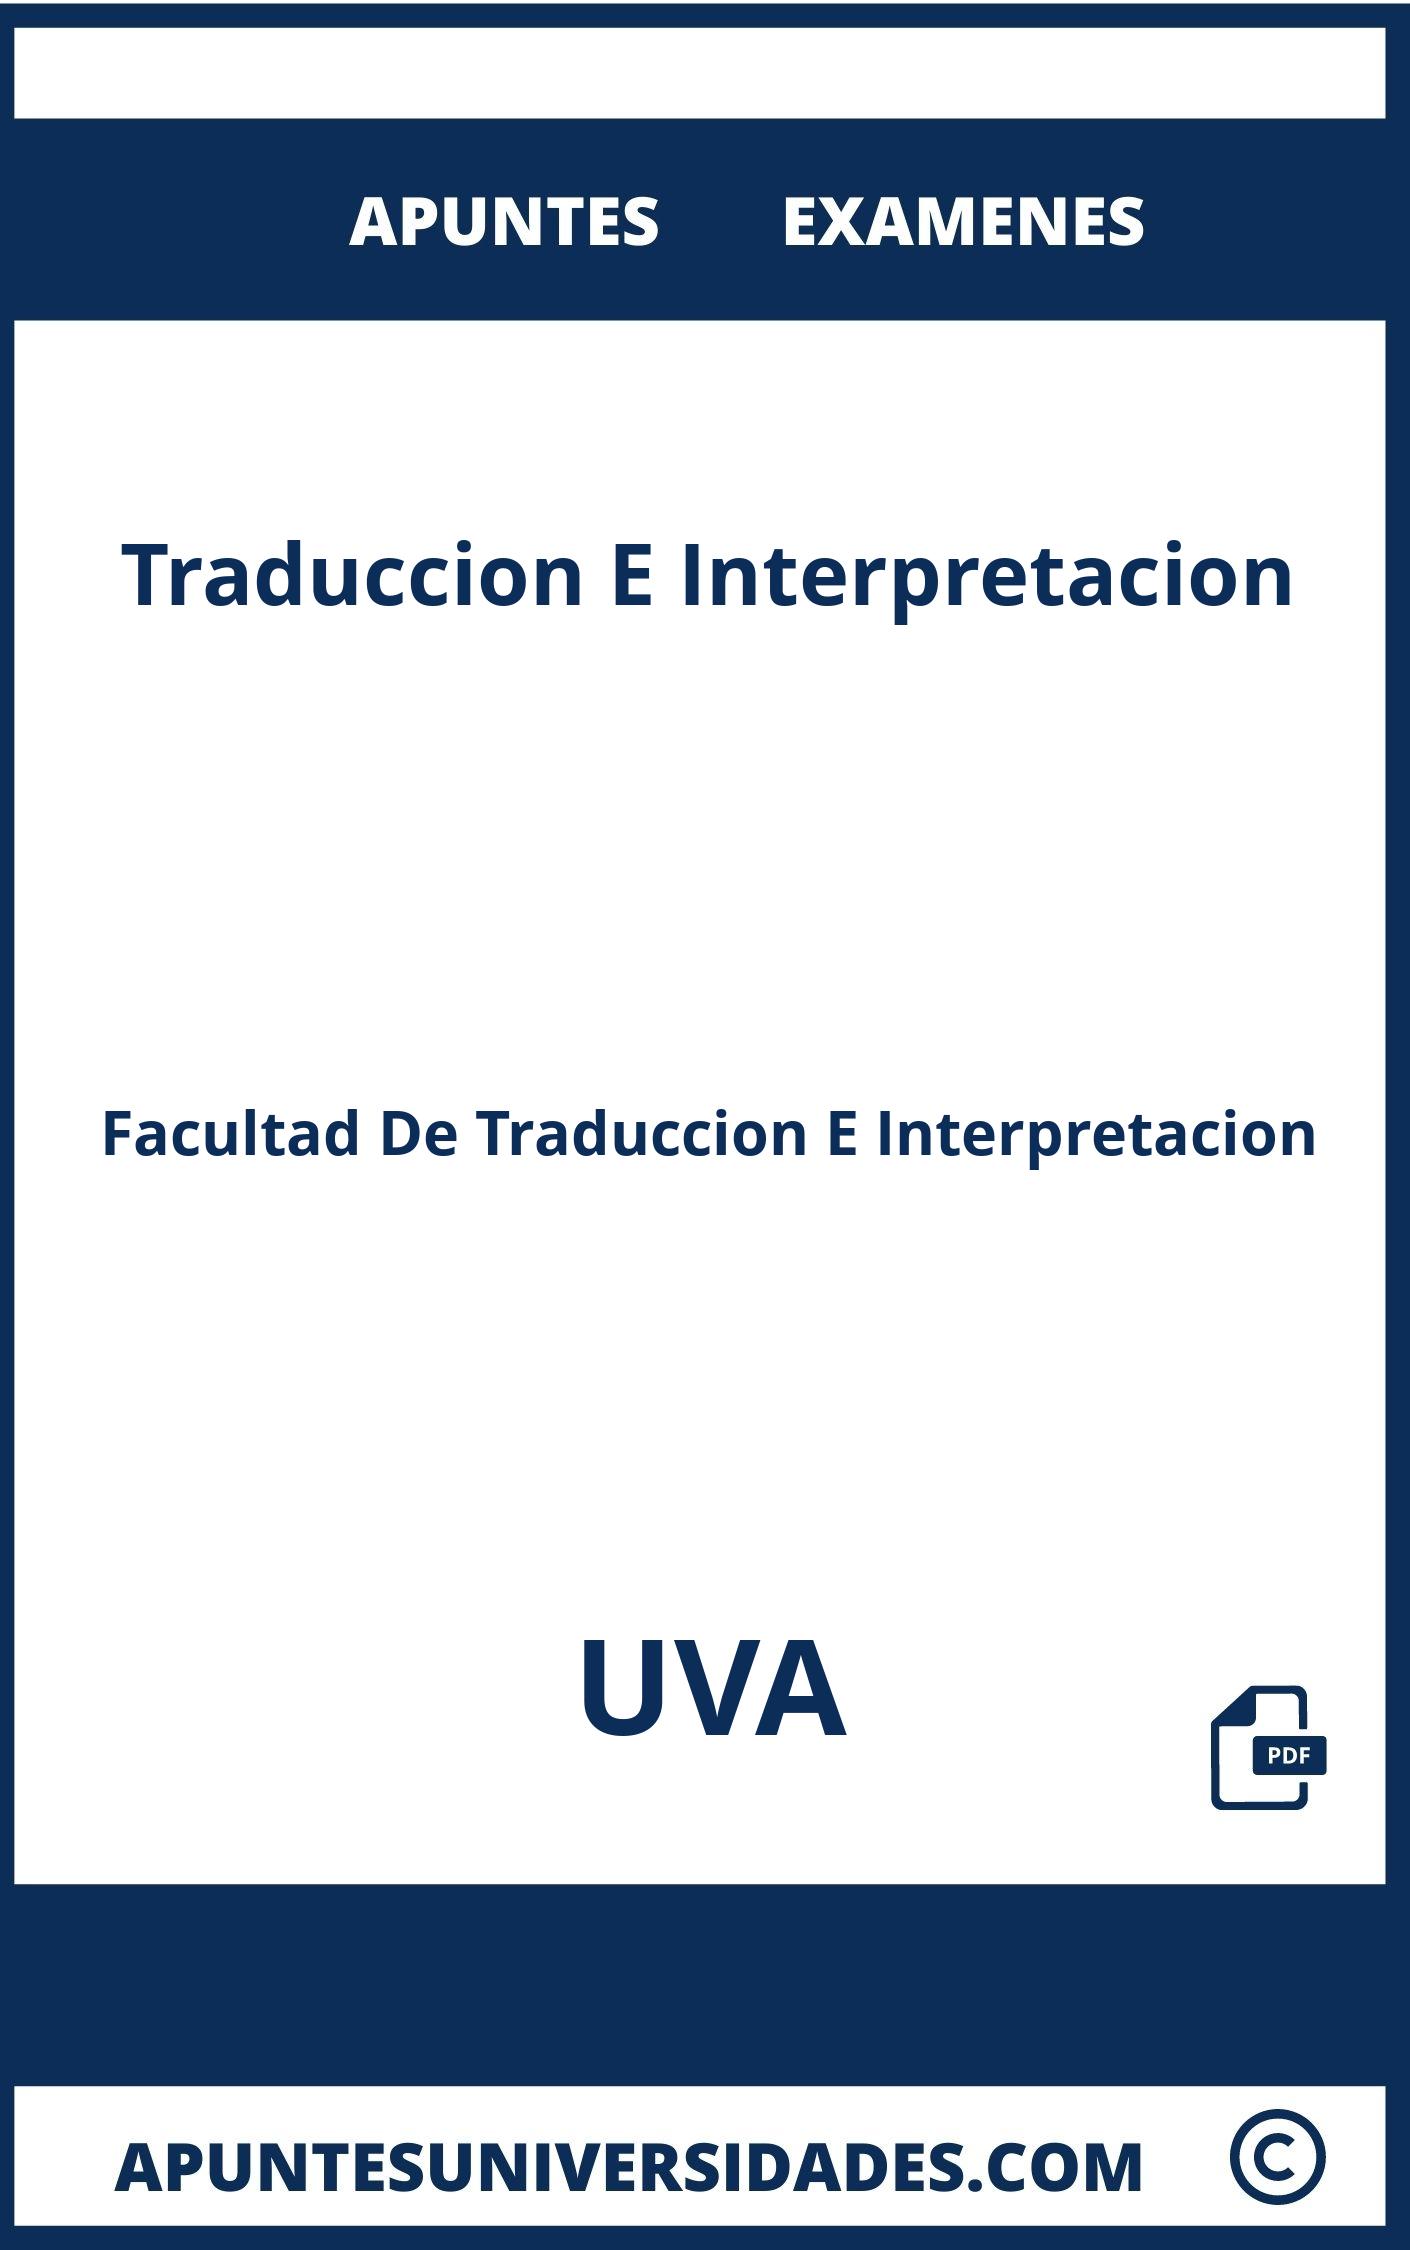 Examenes y Apuntes de Traduccion E Interpretacion UVA